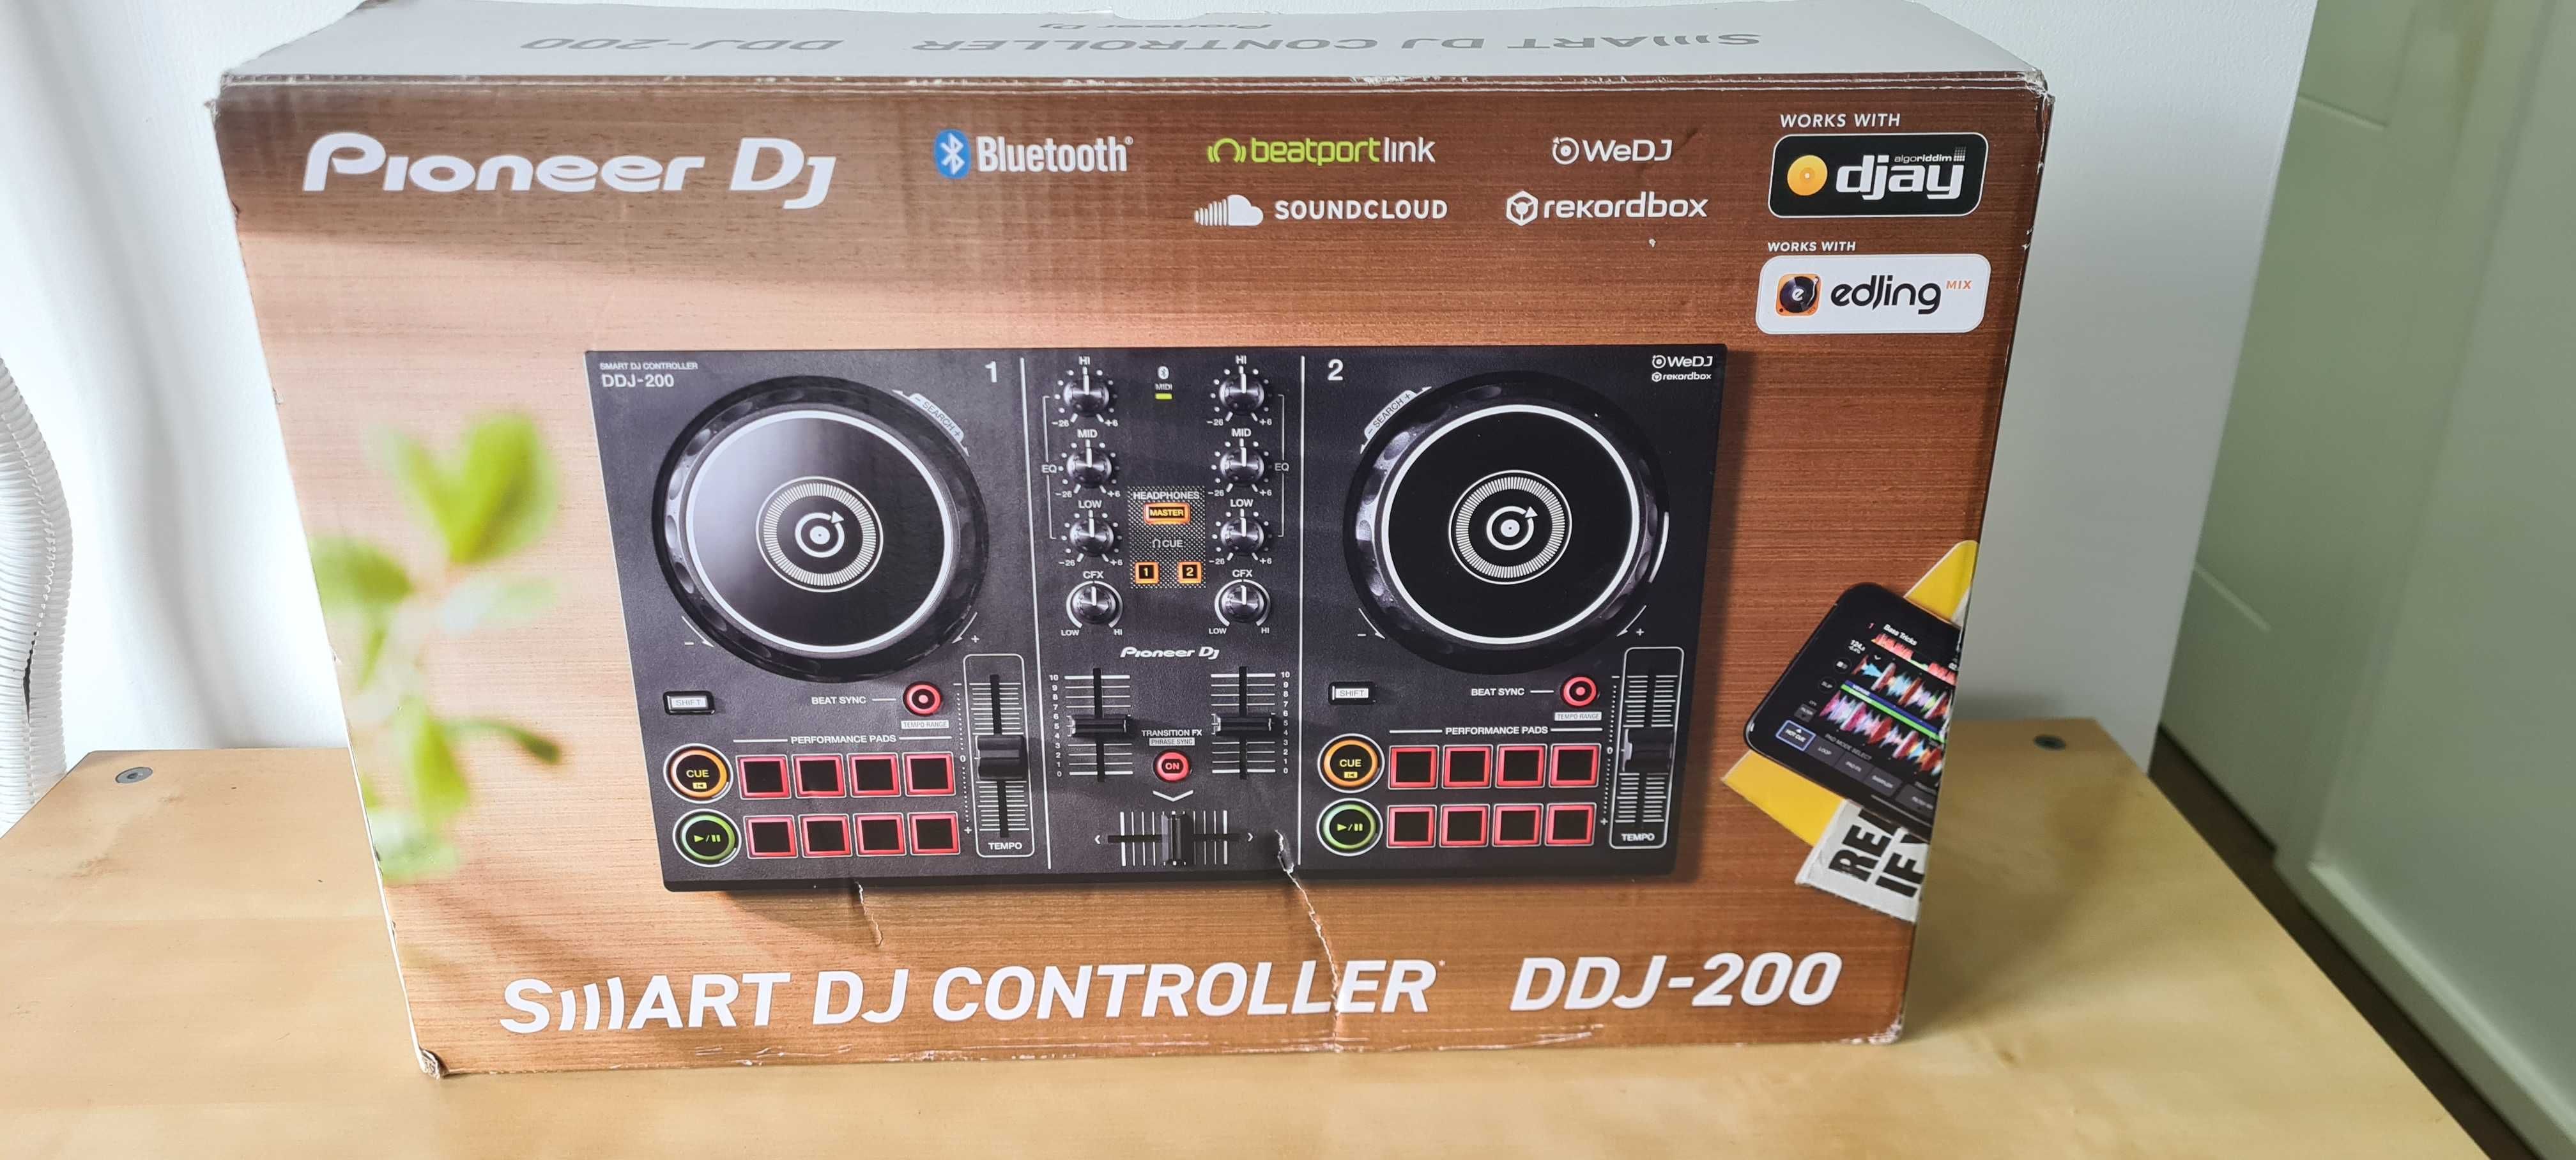 Controlador Pioneer DDJ 200